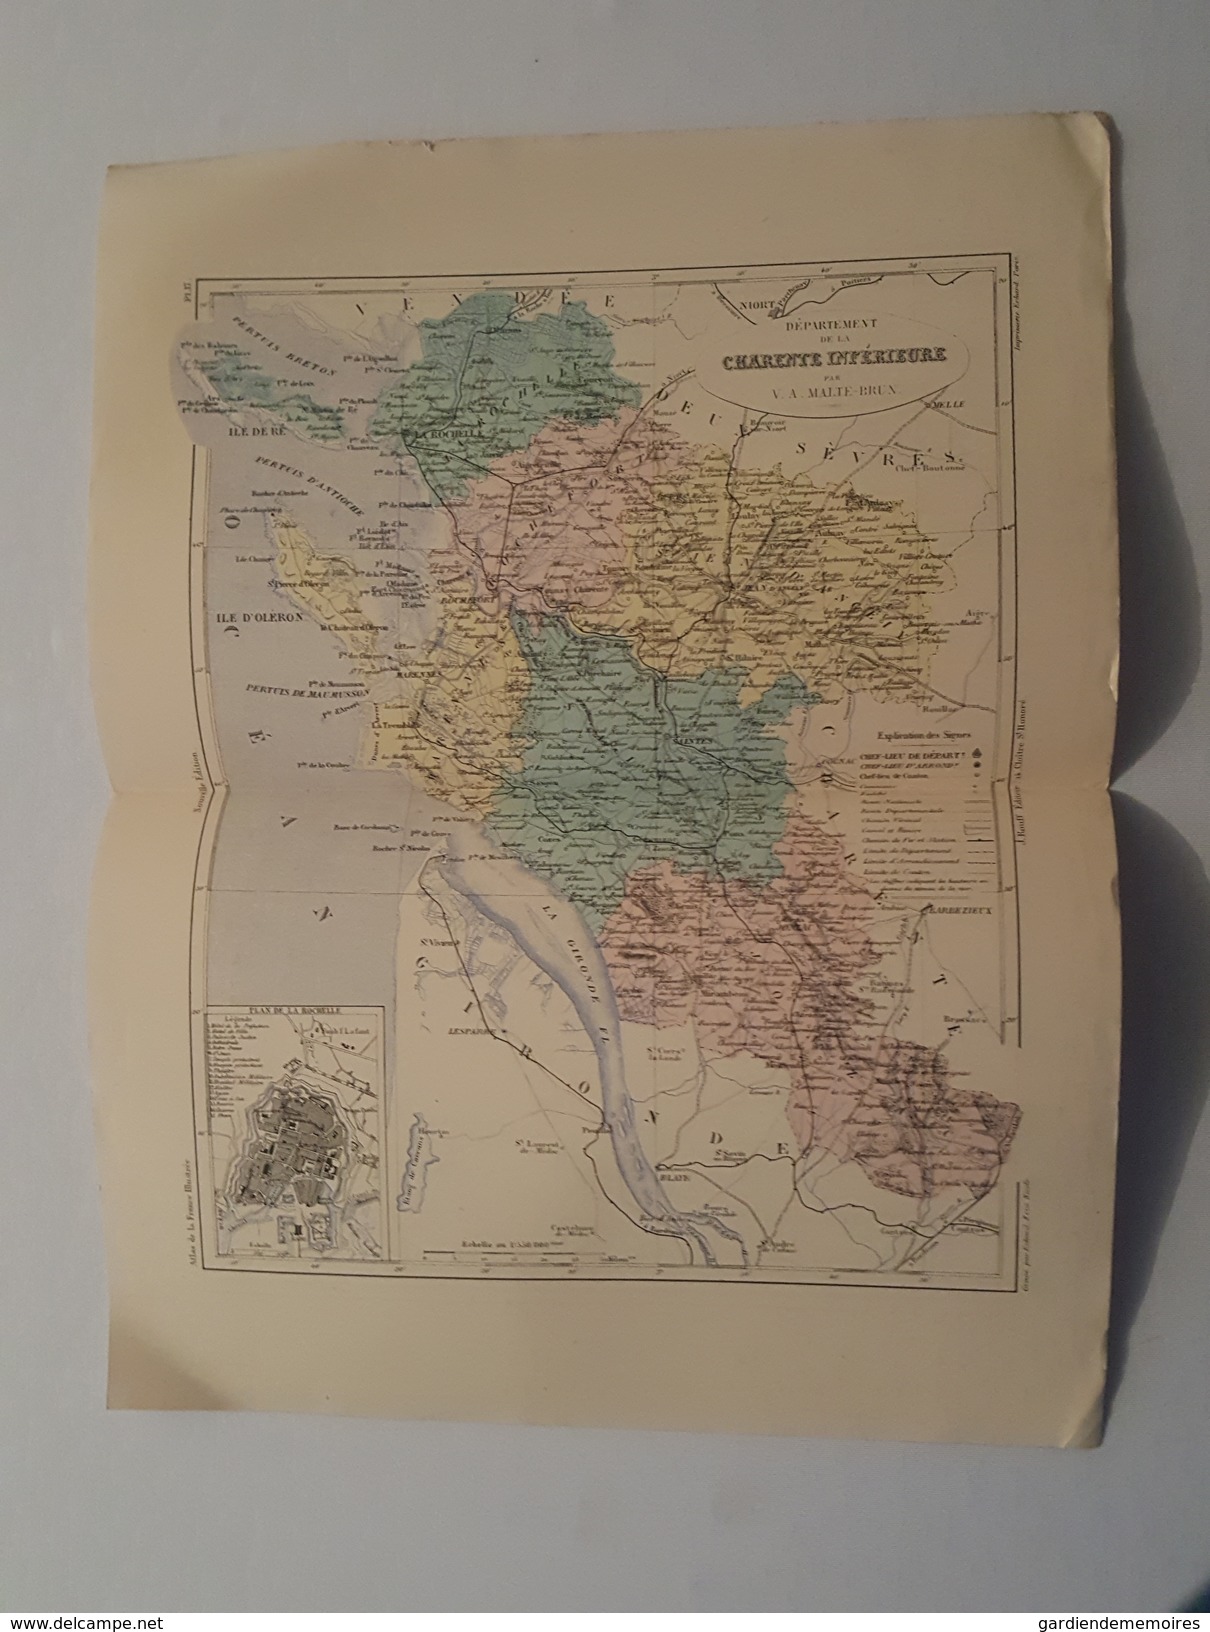 Carte Du XIX ème - Département De La Charente Inférieure Par Malte Brun - Gravé Par Erhard - Rouff éditeur - Cartes Géographiques